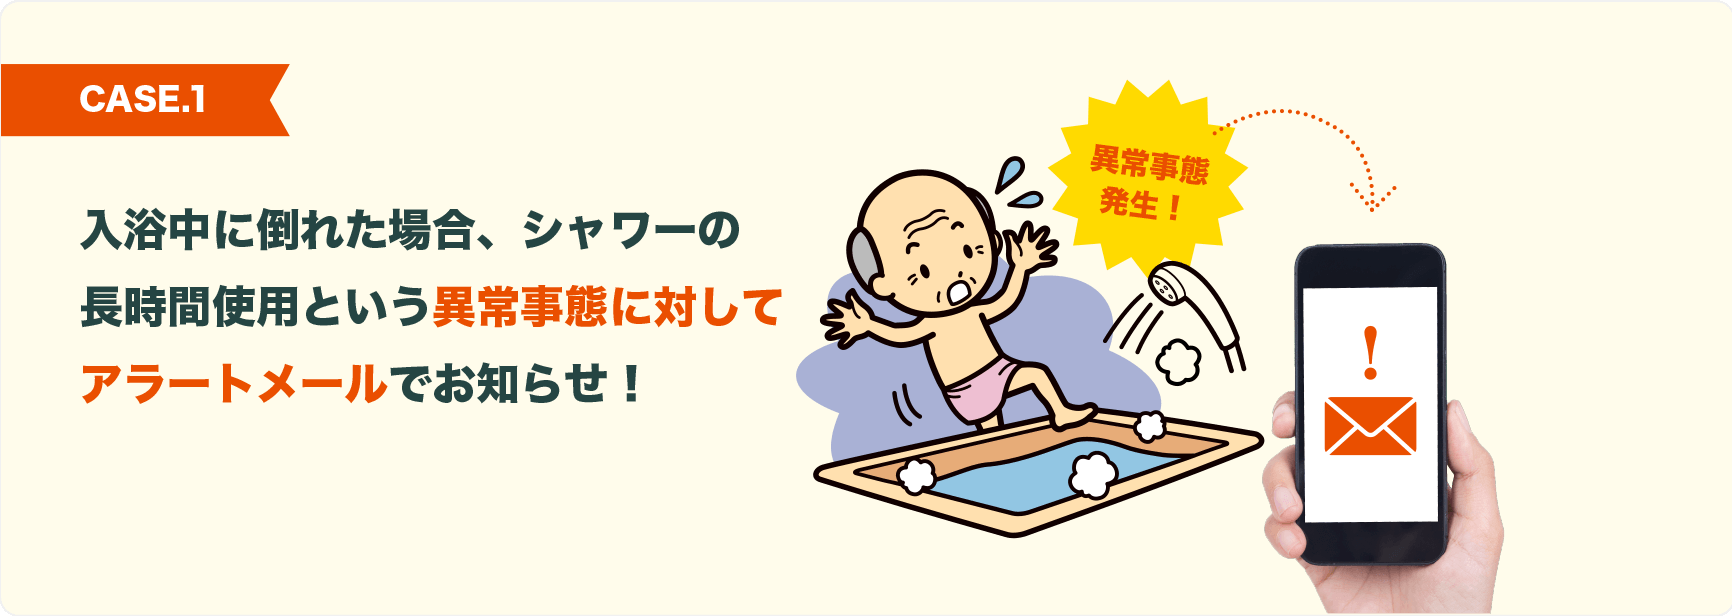 CASE.1 入浴中に倒れた場合、シャワーの長時間使用という異常事態に対してアラートメールでお知らせ！